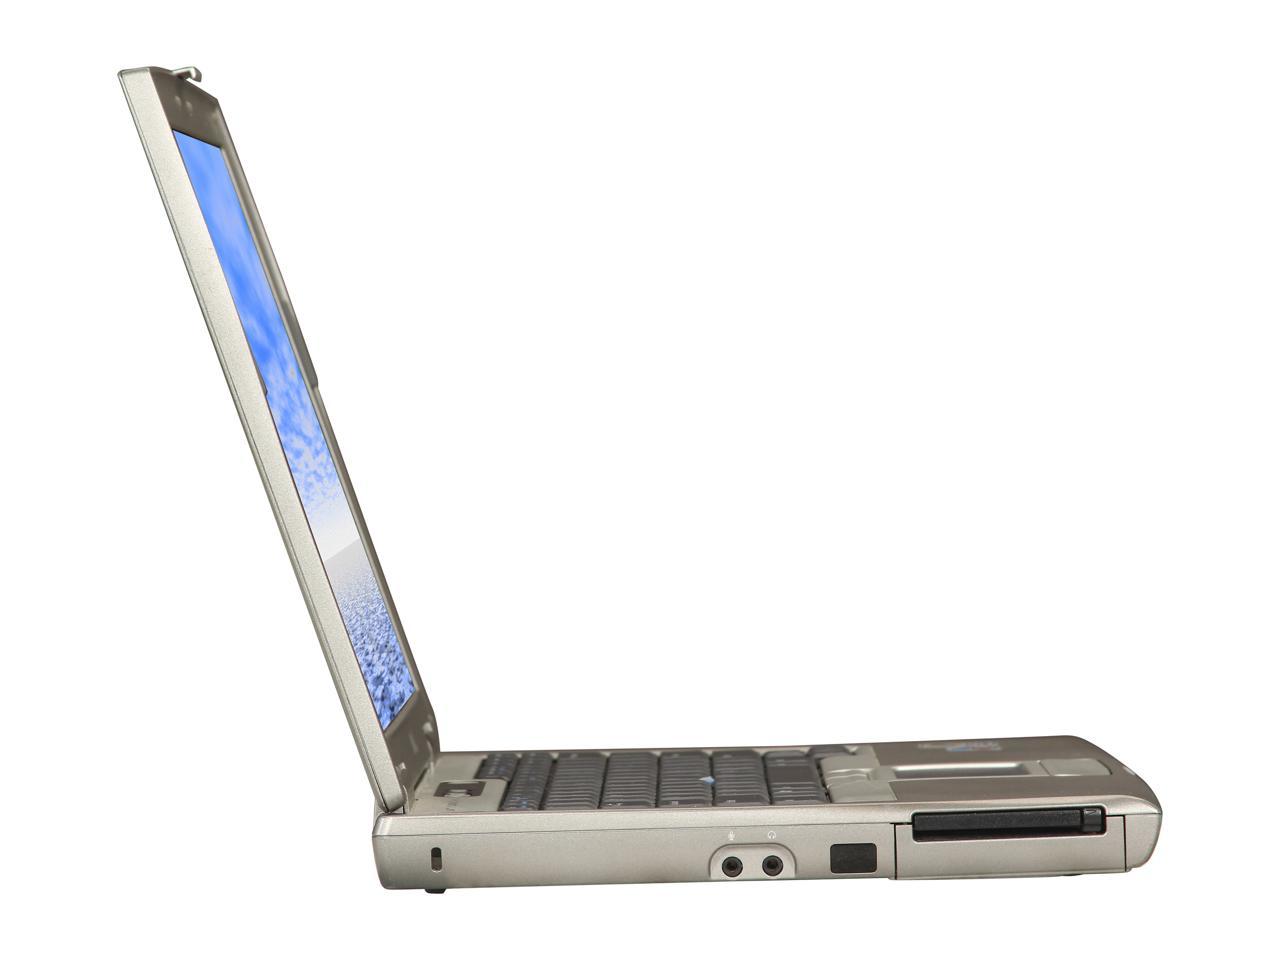 Refurbished: DELL Laptop Latitude D610 Intel Pentium M 1.60 GHz 1 GB